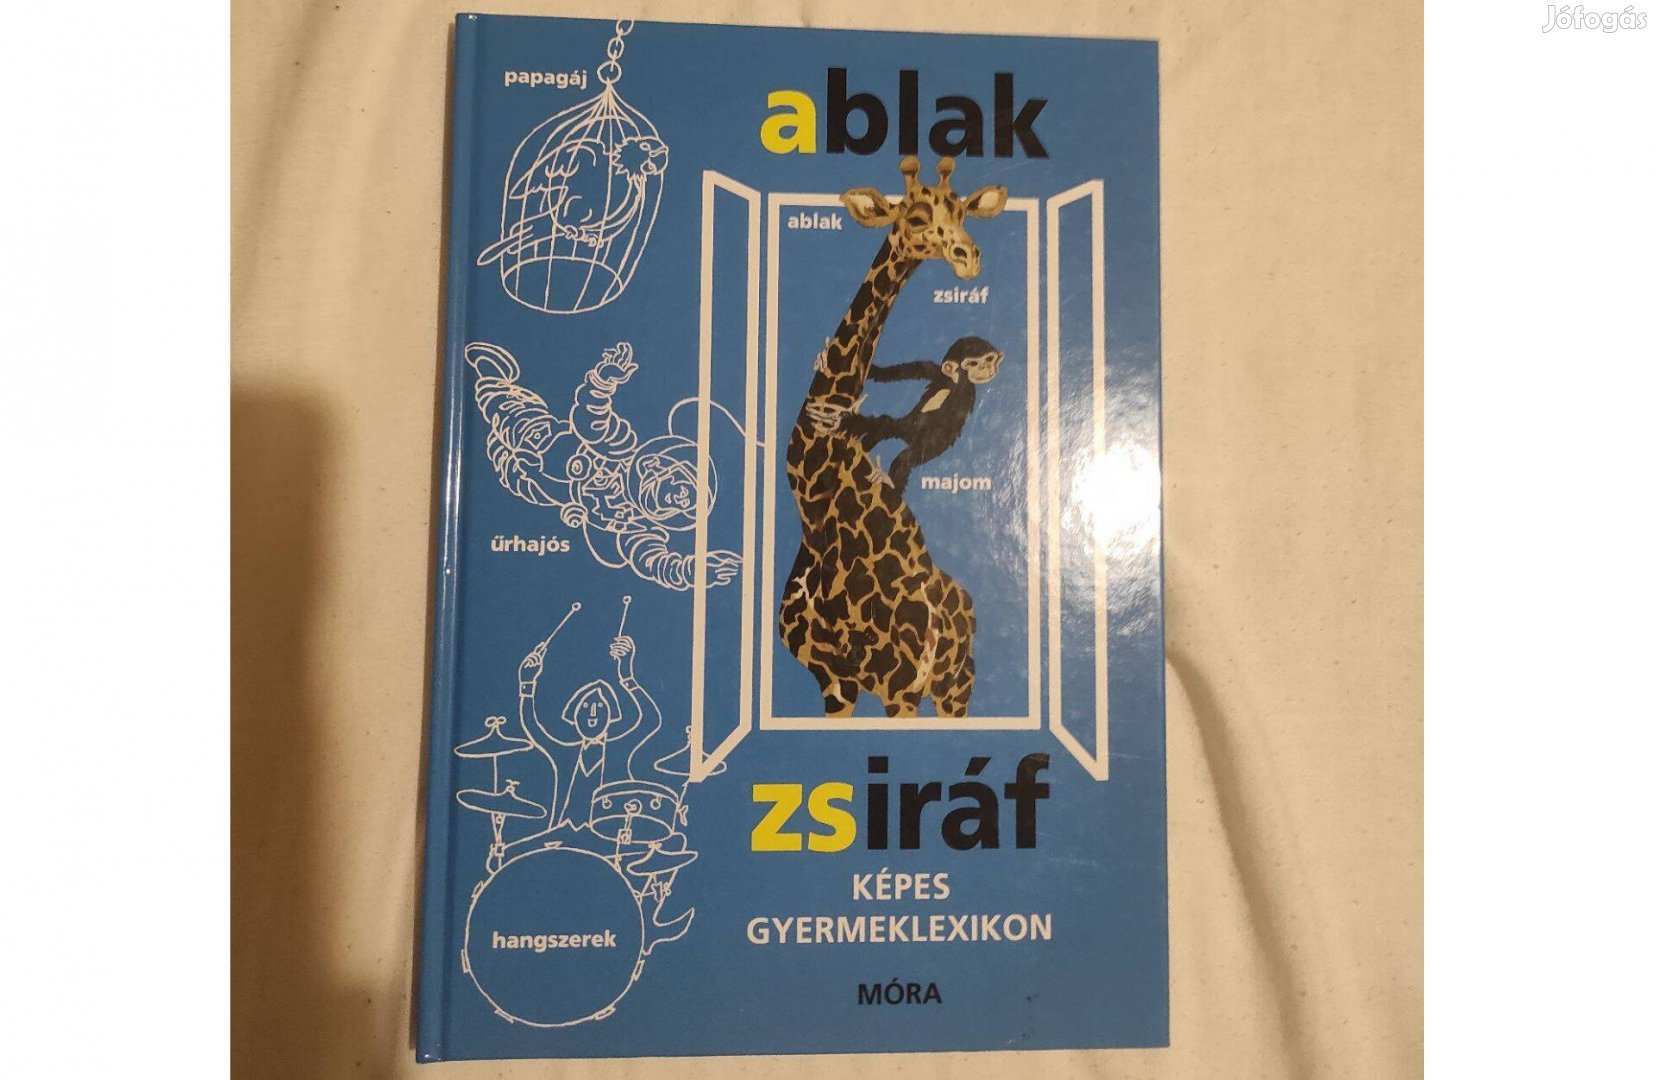 Ablak Zsiráf képes gyermeklexikon könyv